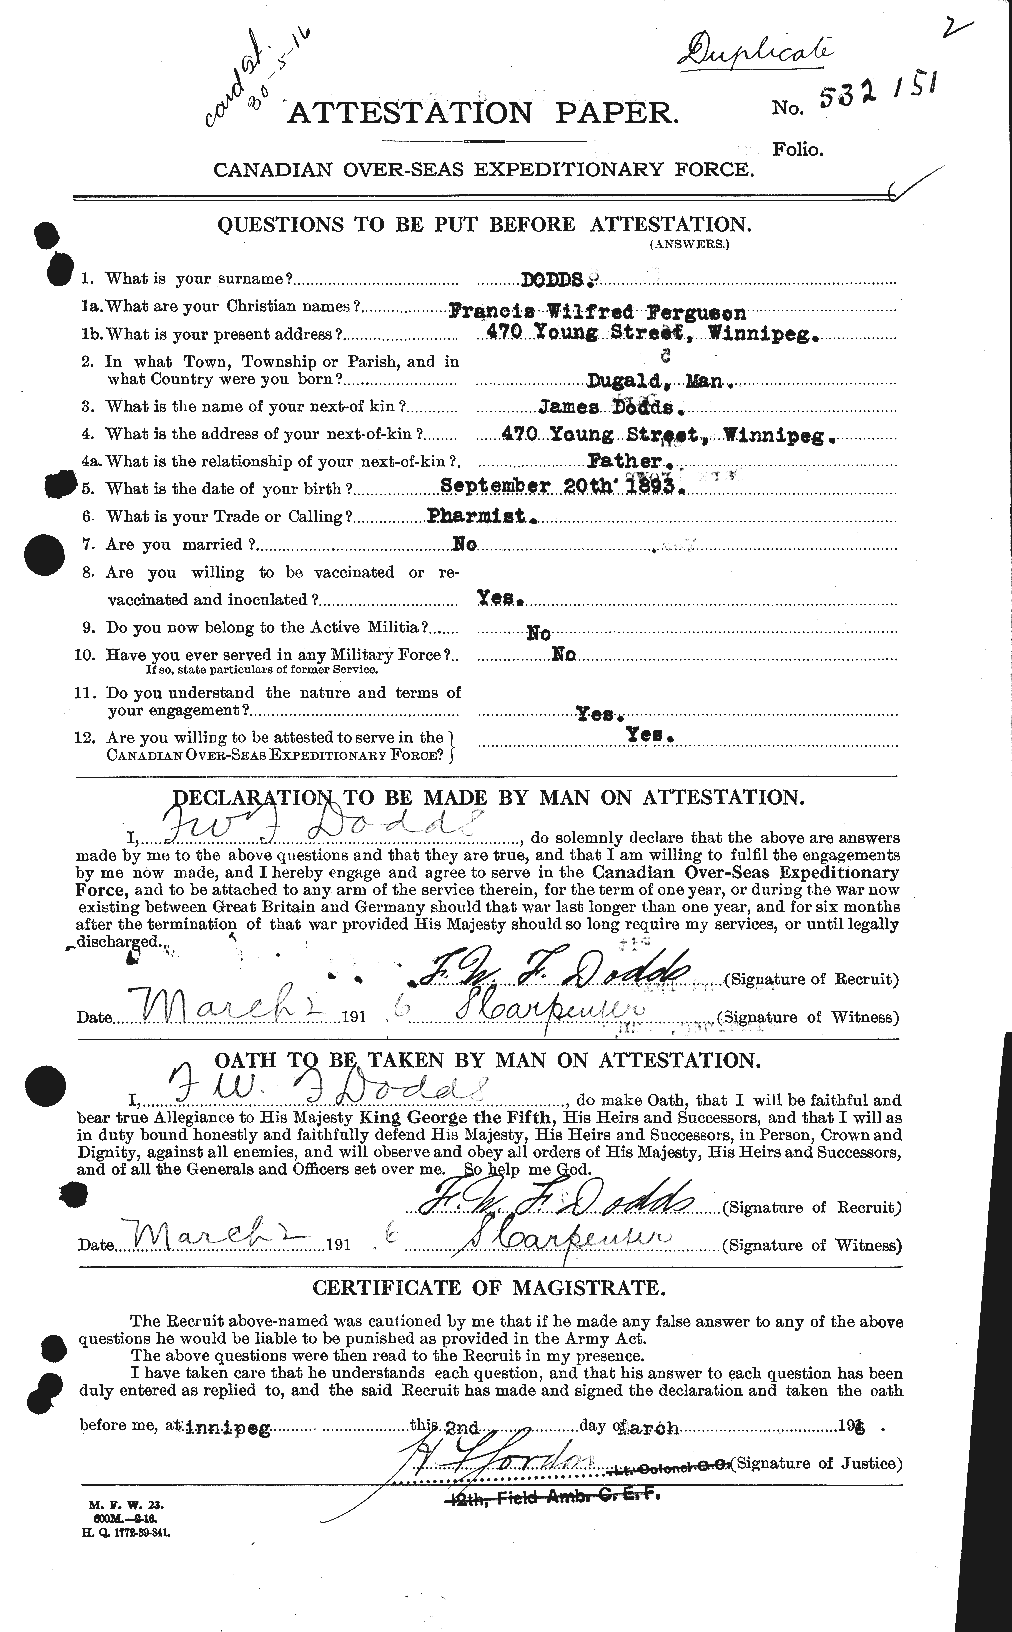 Dossiers du Personnel de la Première Guerre mondiale - CEC 294371a